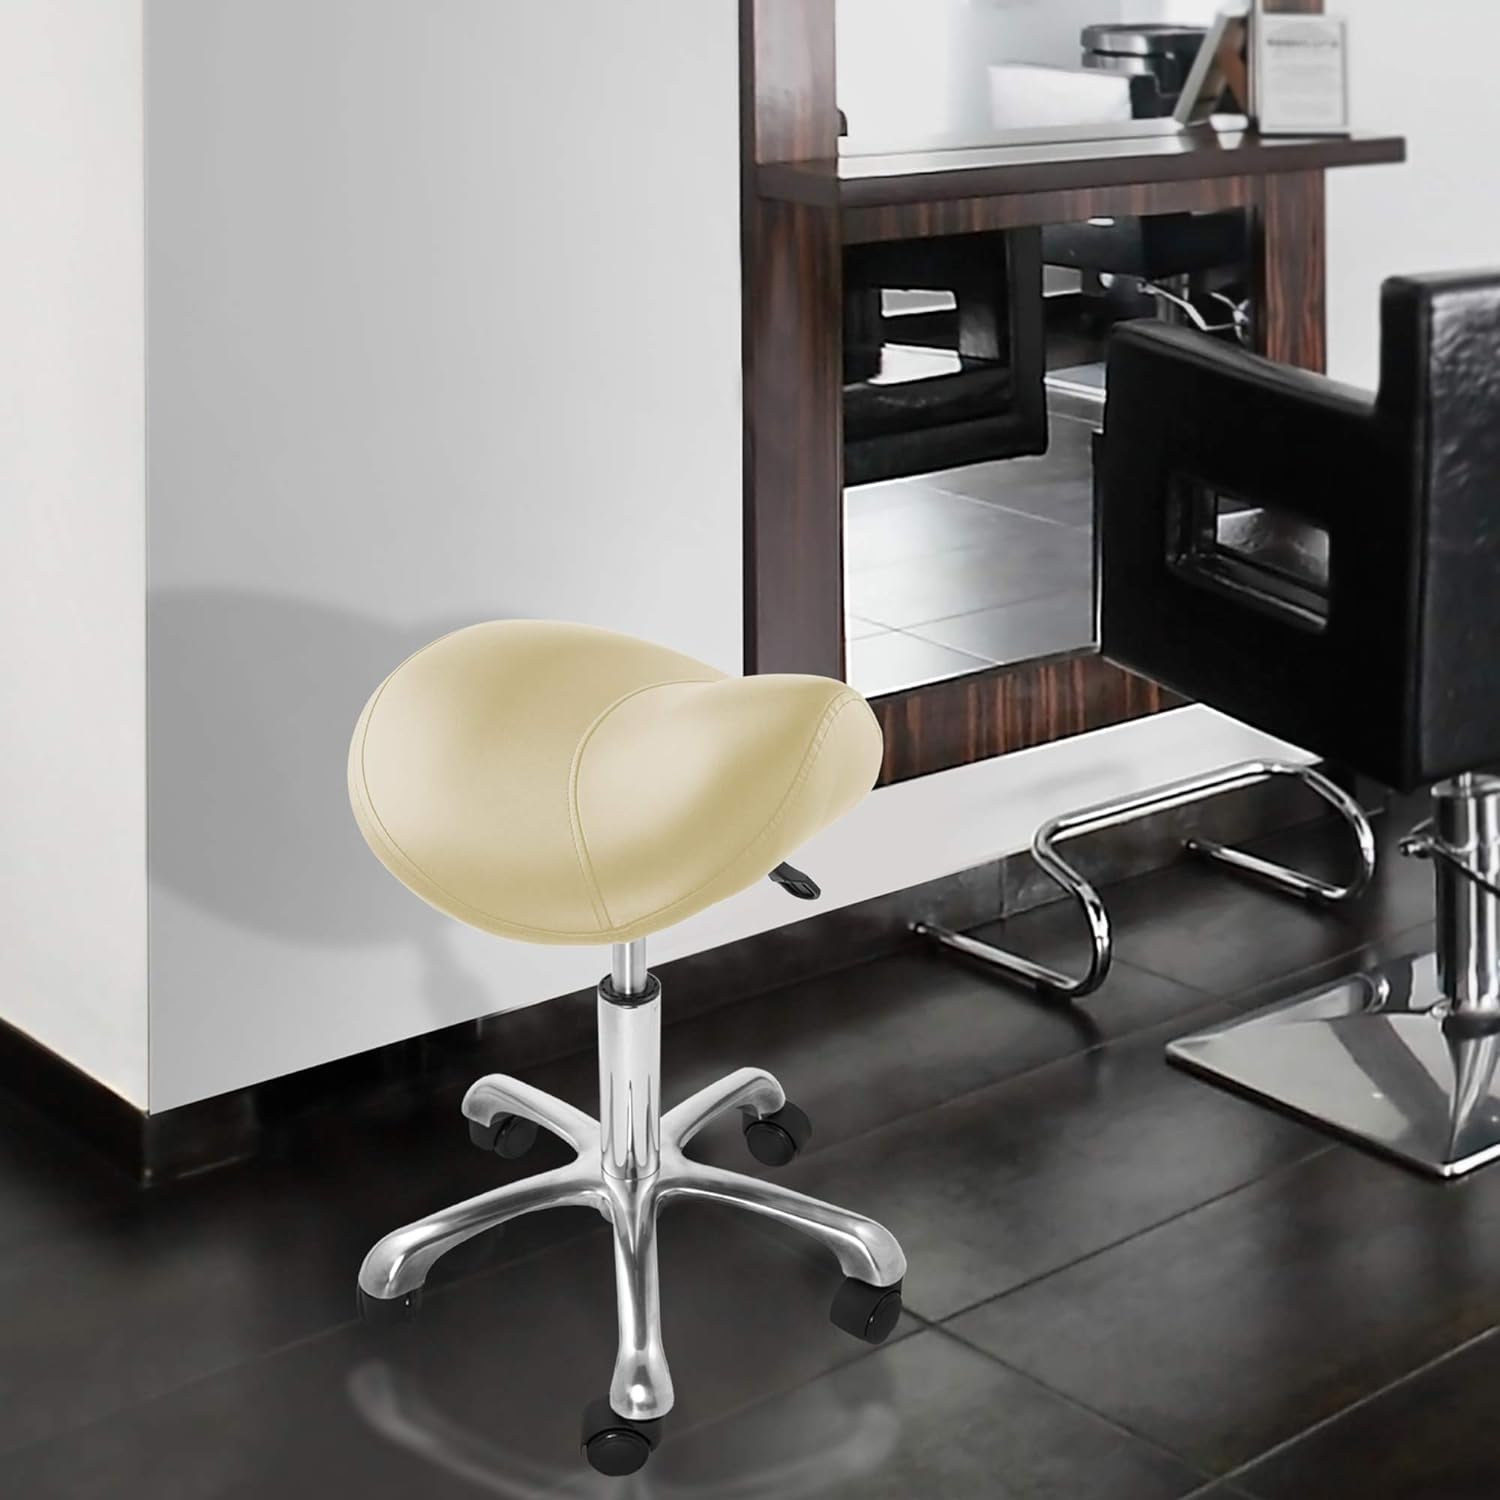 Taburete ergonómico profesional, color crema, asiento hidráulico ajustable